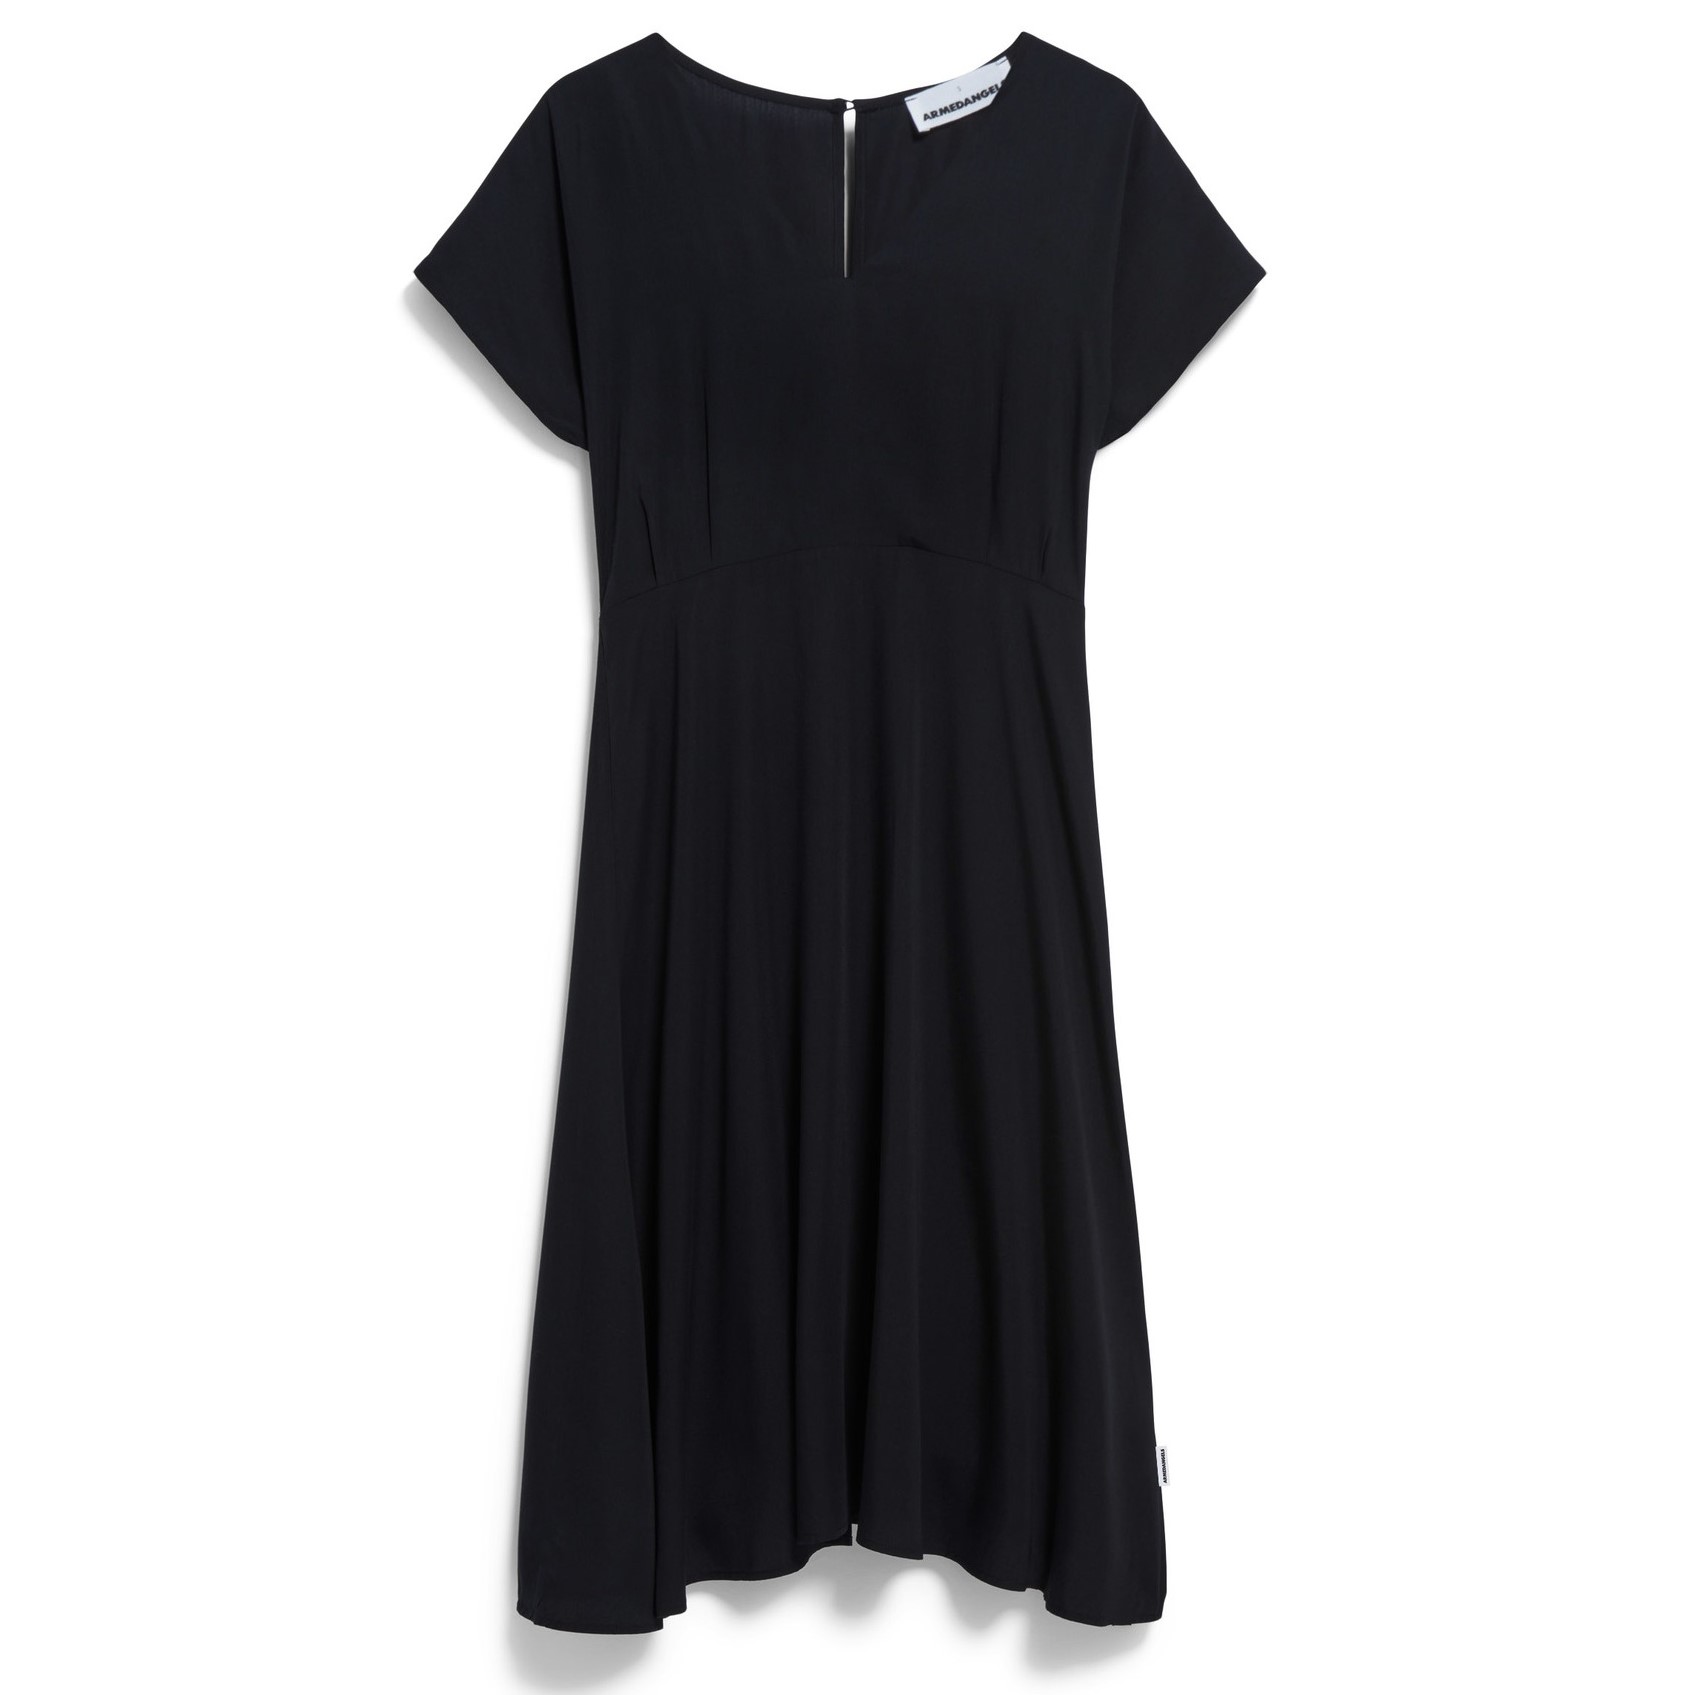 Kurzarm-Kleid AALBINE black